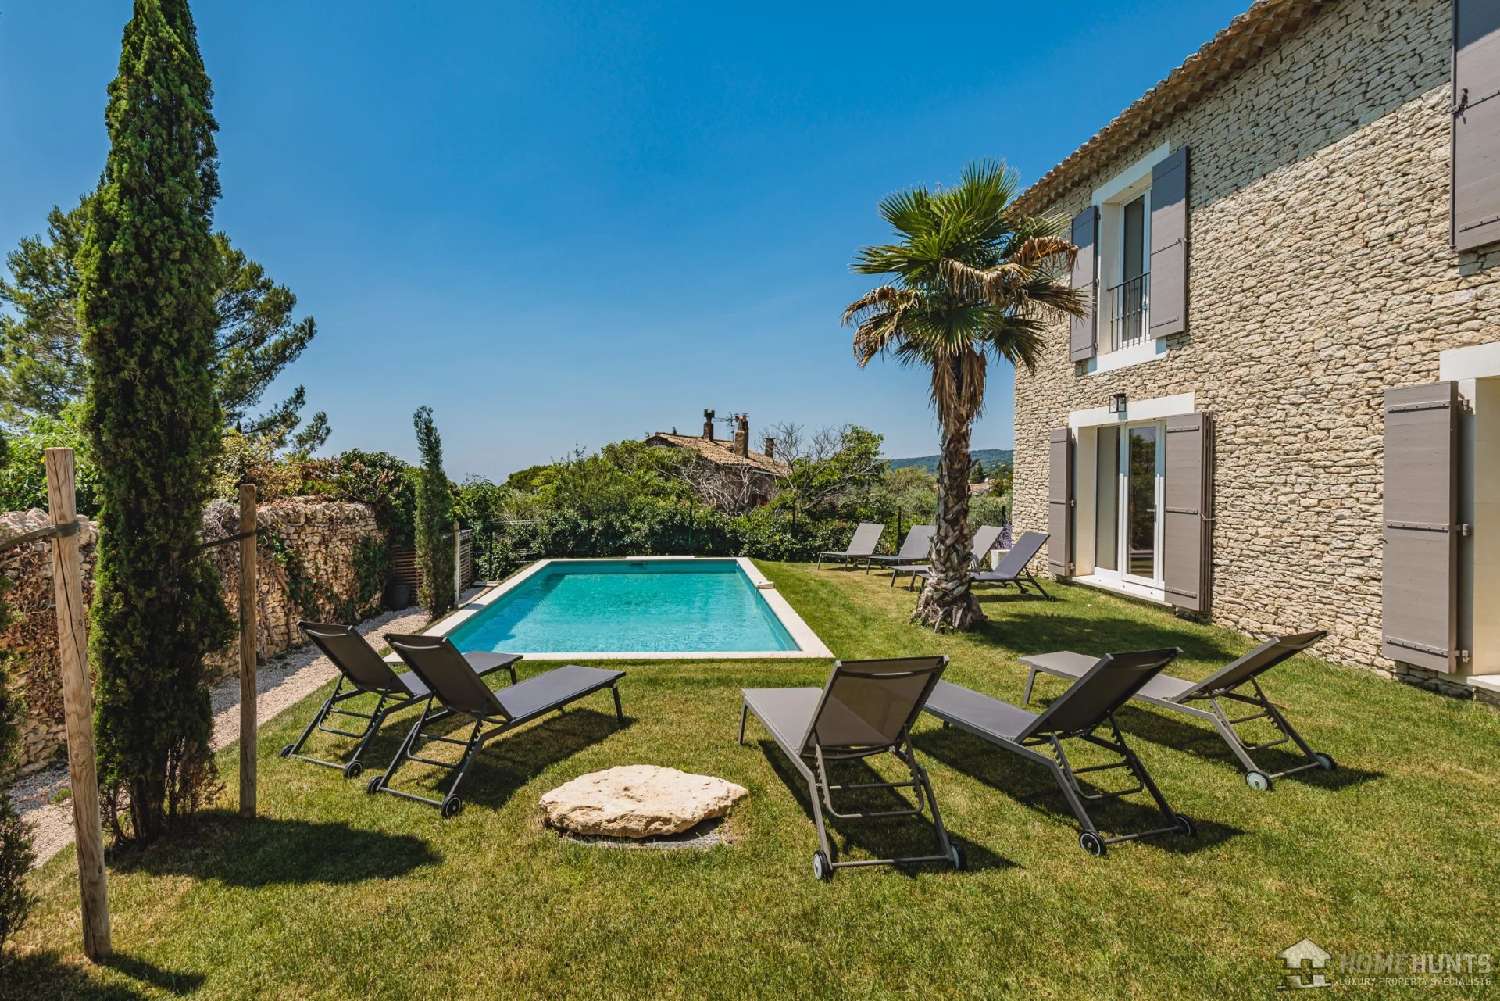  à vendre villa Gordes Vaucluse 2